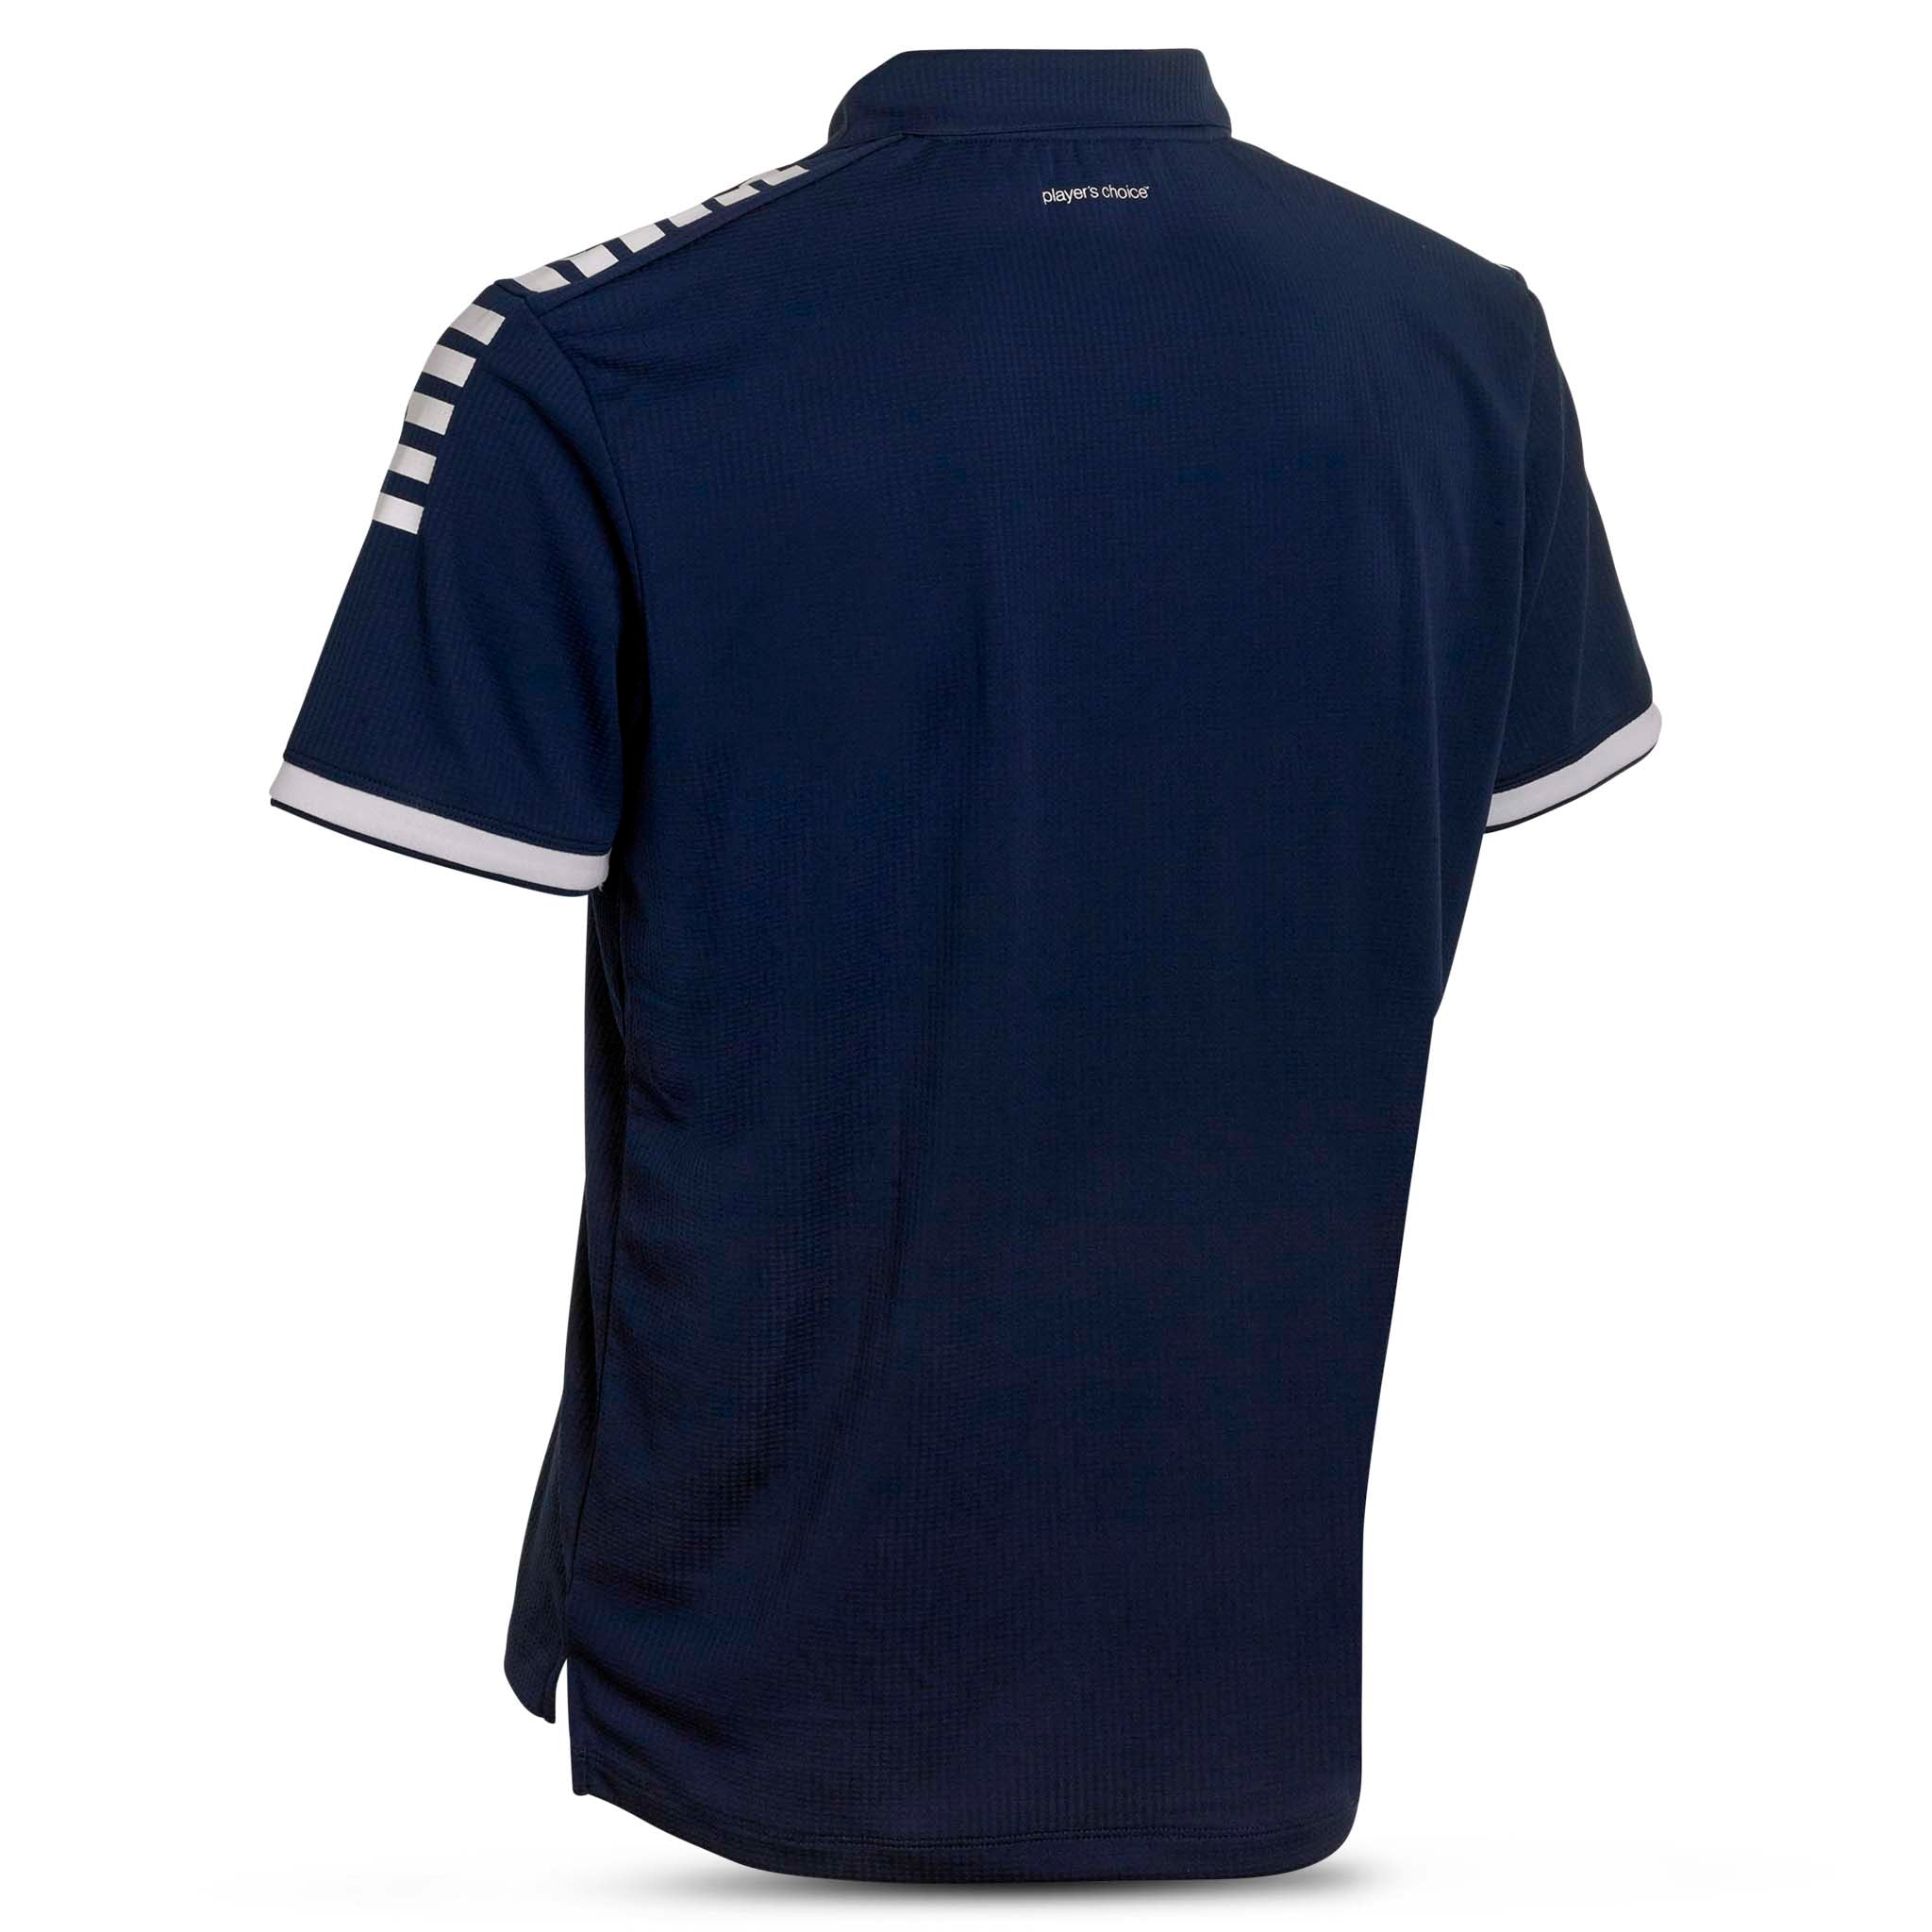 Technical Polo shirt - Monaco #farve_navy